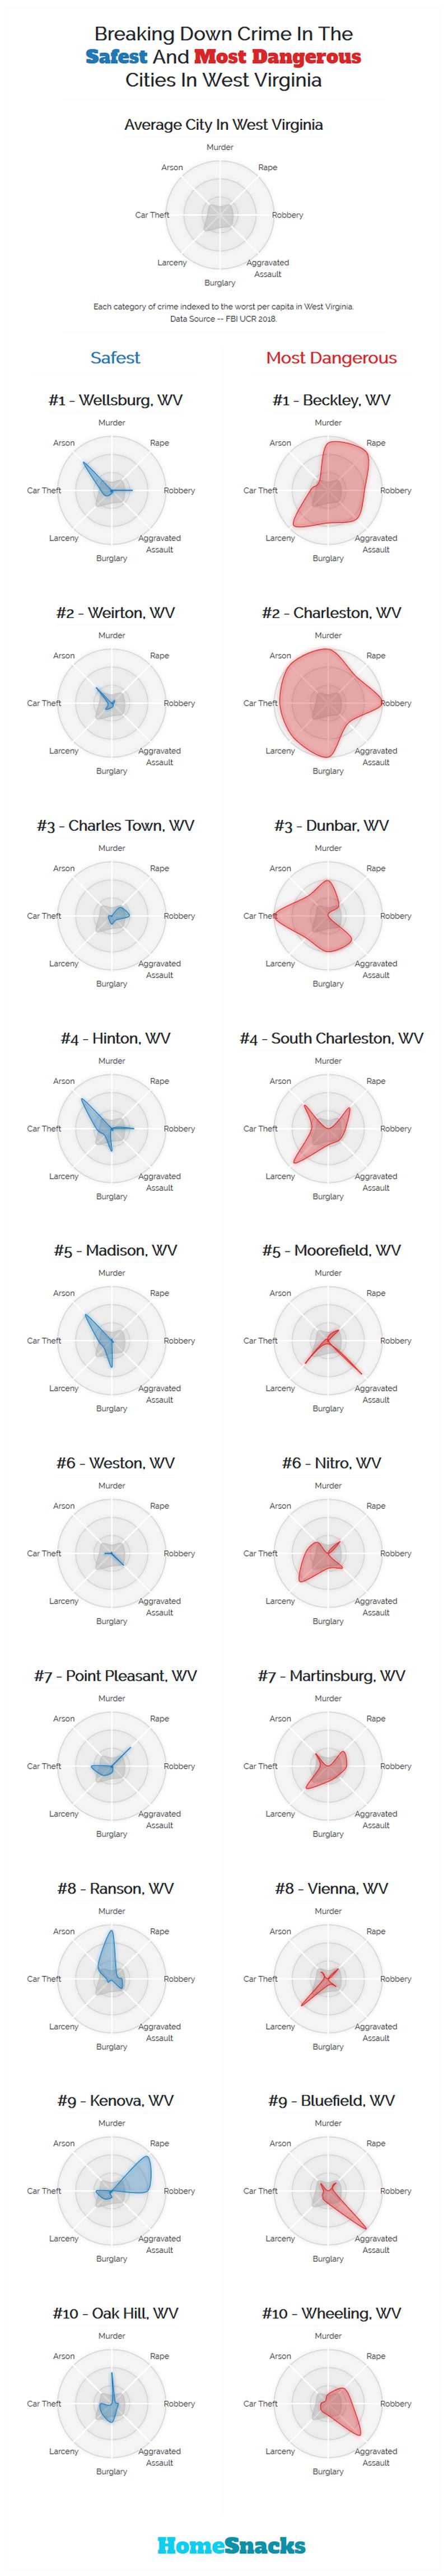 Safest Cities in West Virginia Breakdown